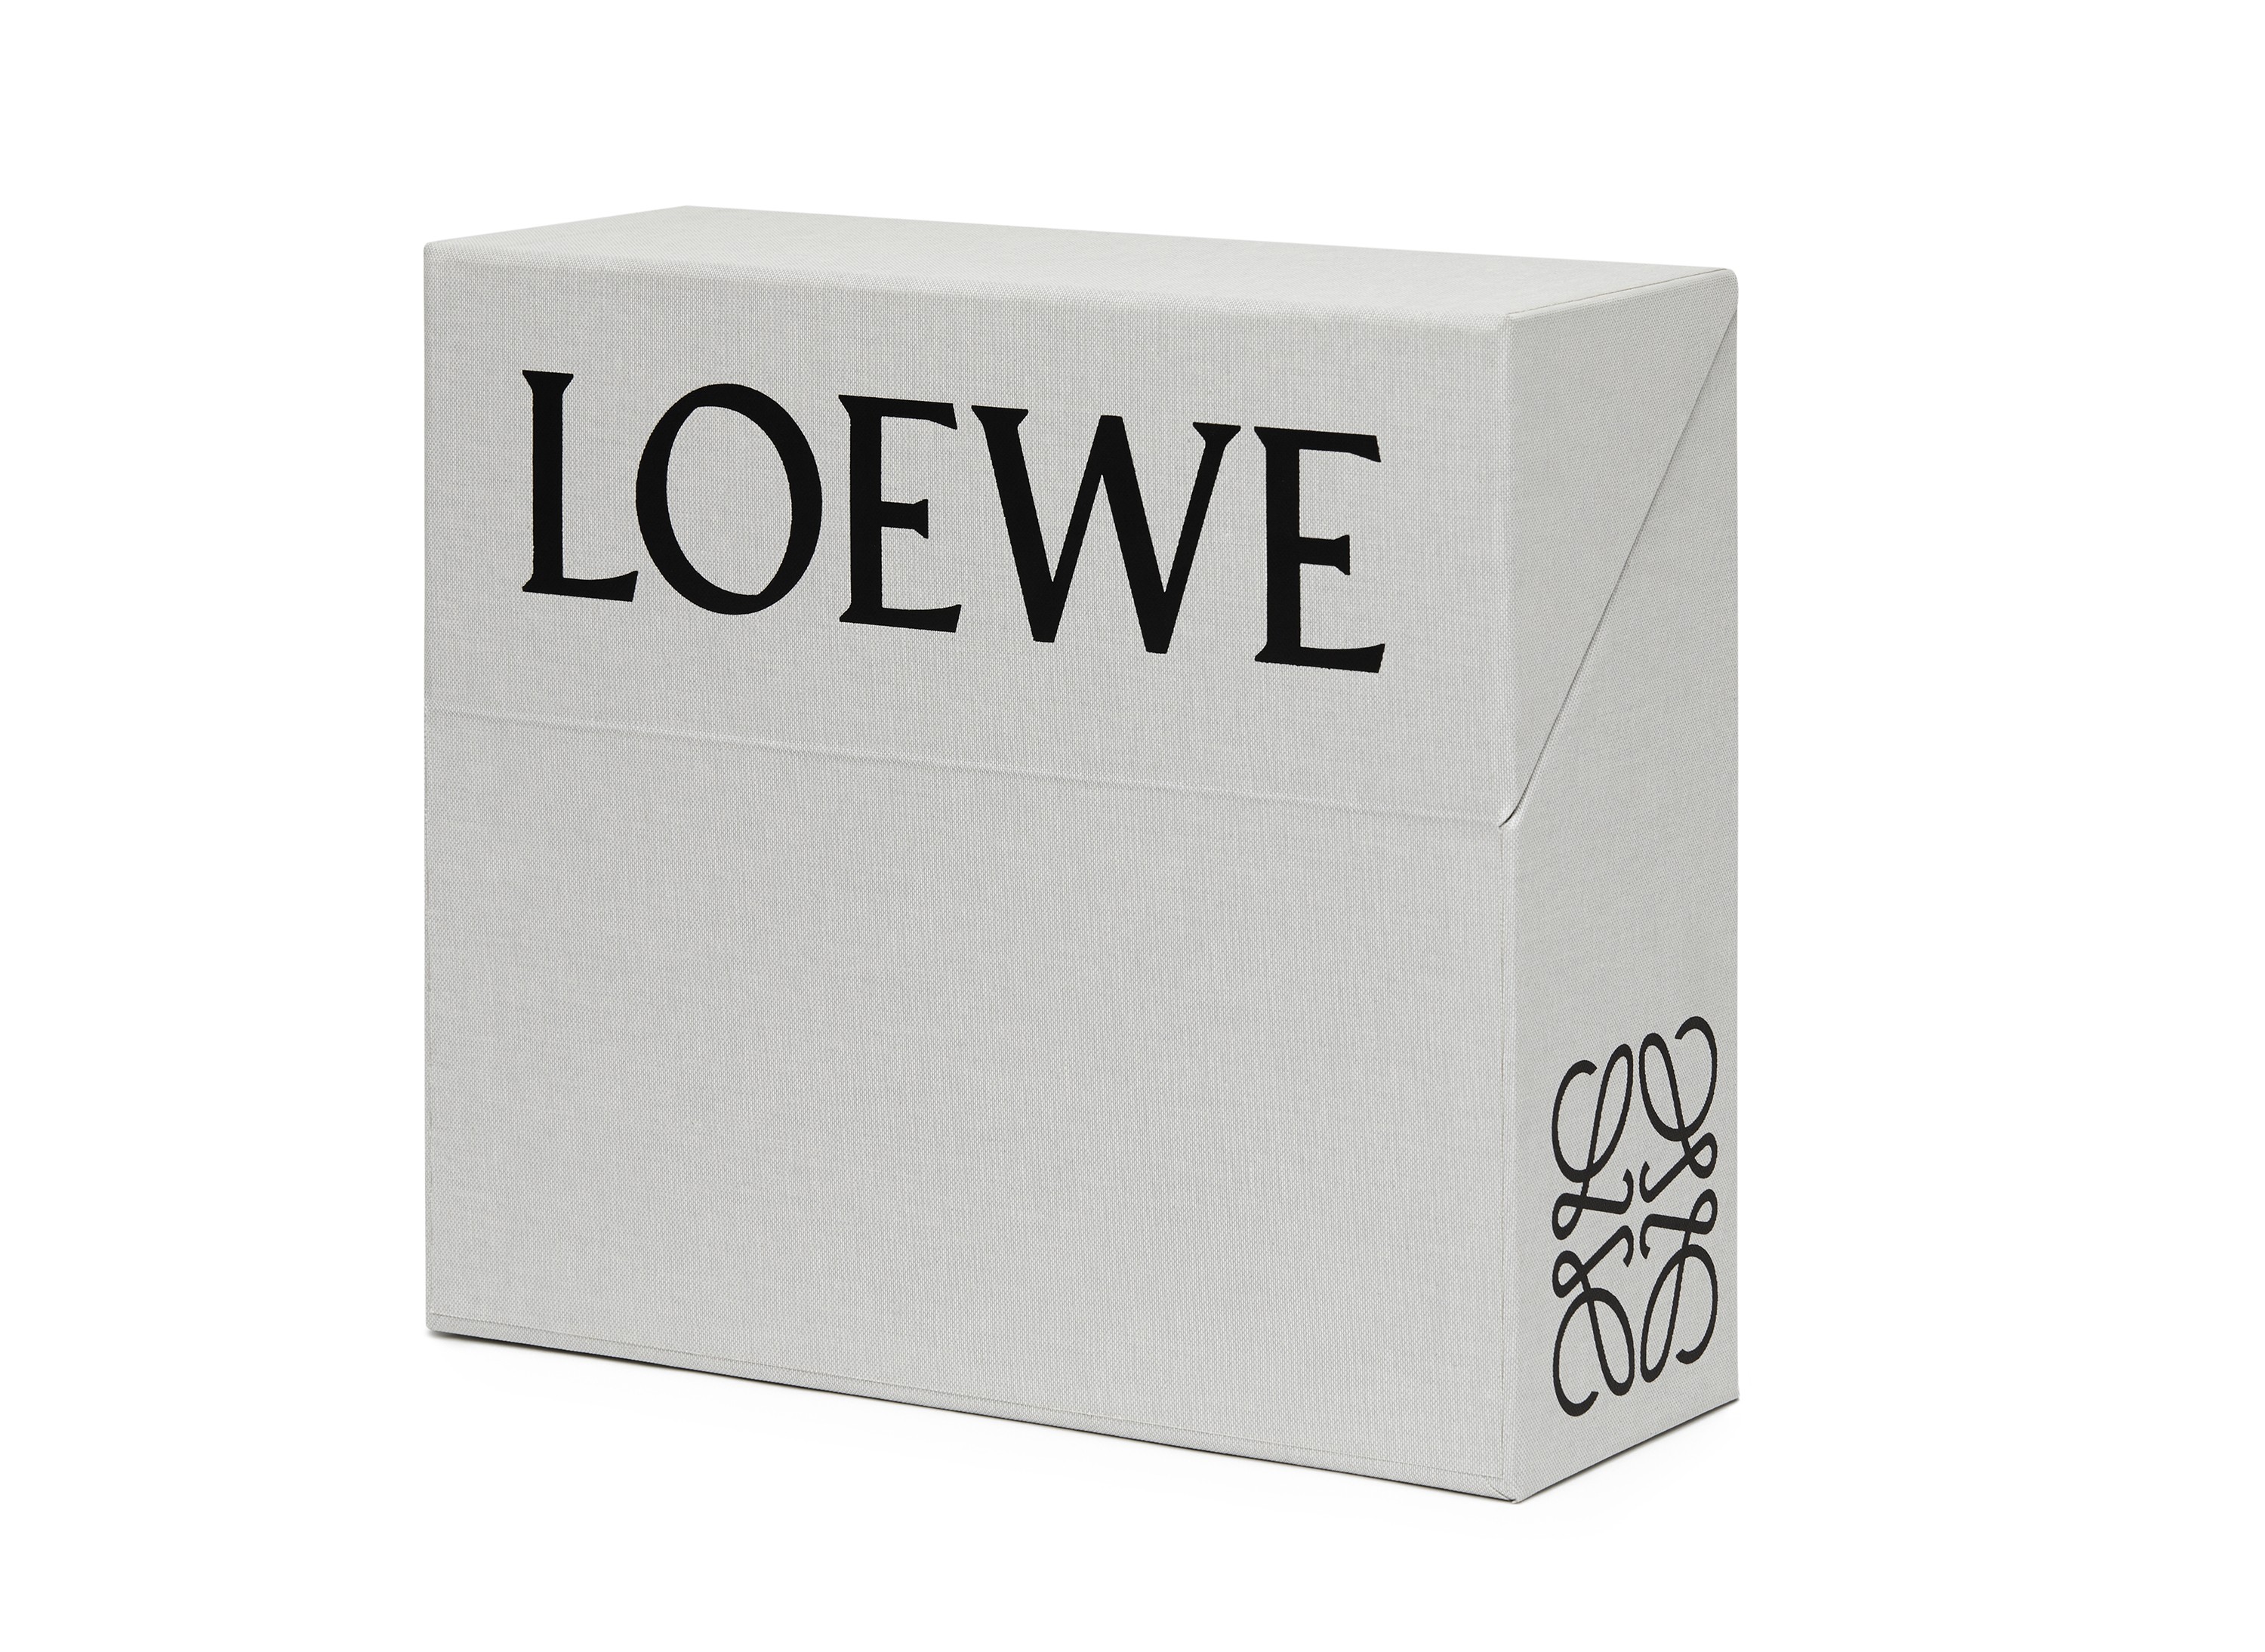 Caixa com a coleção da Loewe (Foto: Divulgação)